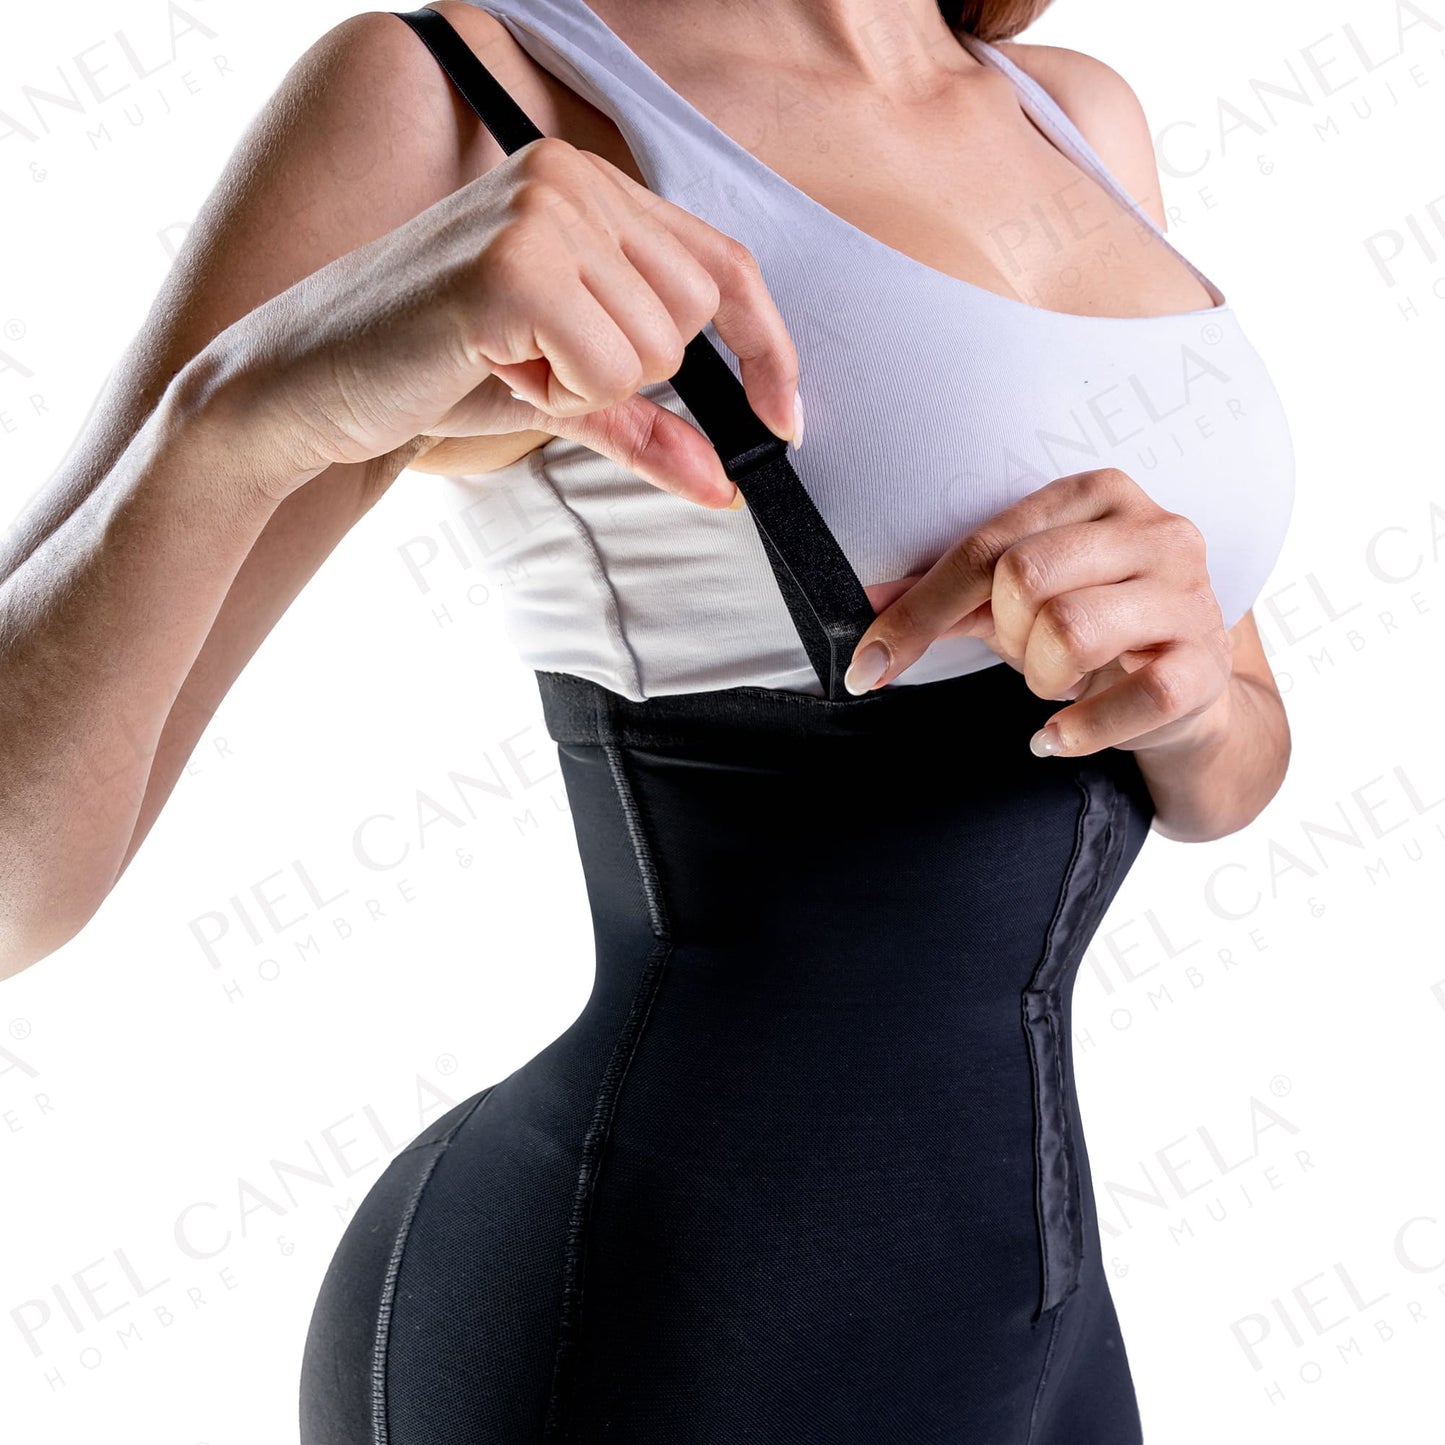 
                  
                    Faja levanta booty es de un material transpirable y suave qué se ajusta a a tu piel ayudándote a levantar el glúteo y le da una forma espectacular teniendo un efecto push up y haciéndolo más definido.
                  
                